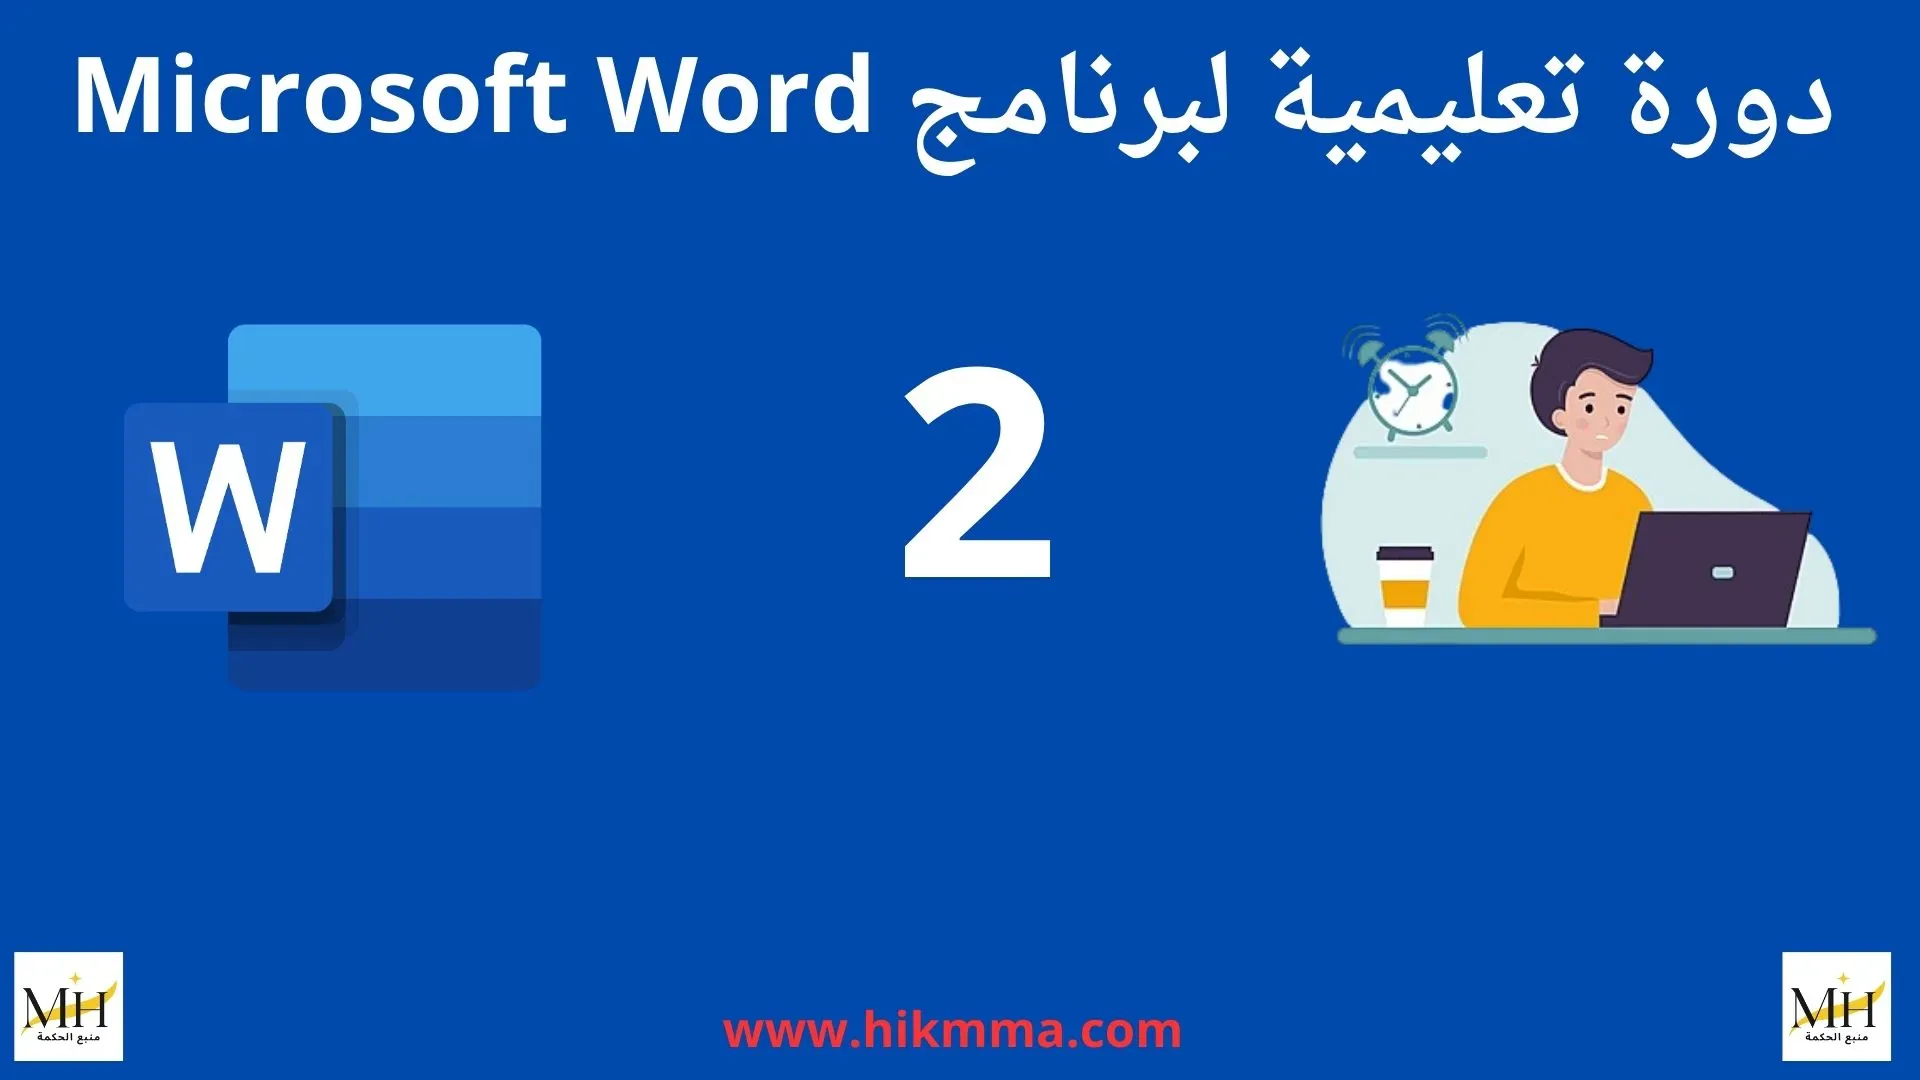 دورة تعليمية لبرنامج ميكروسوفت وورد Microsoft Word